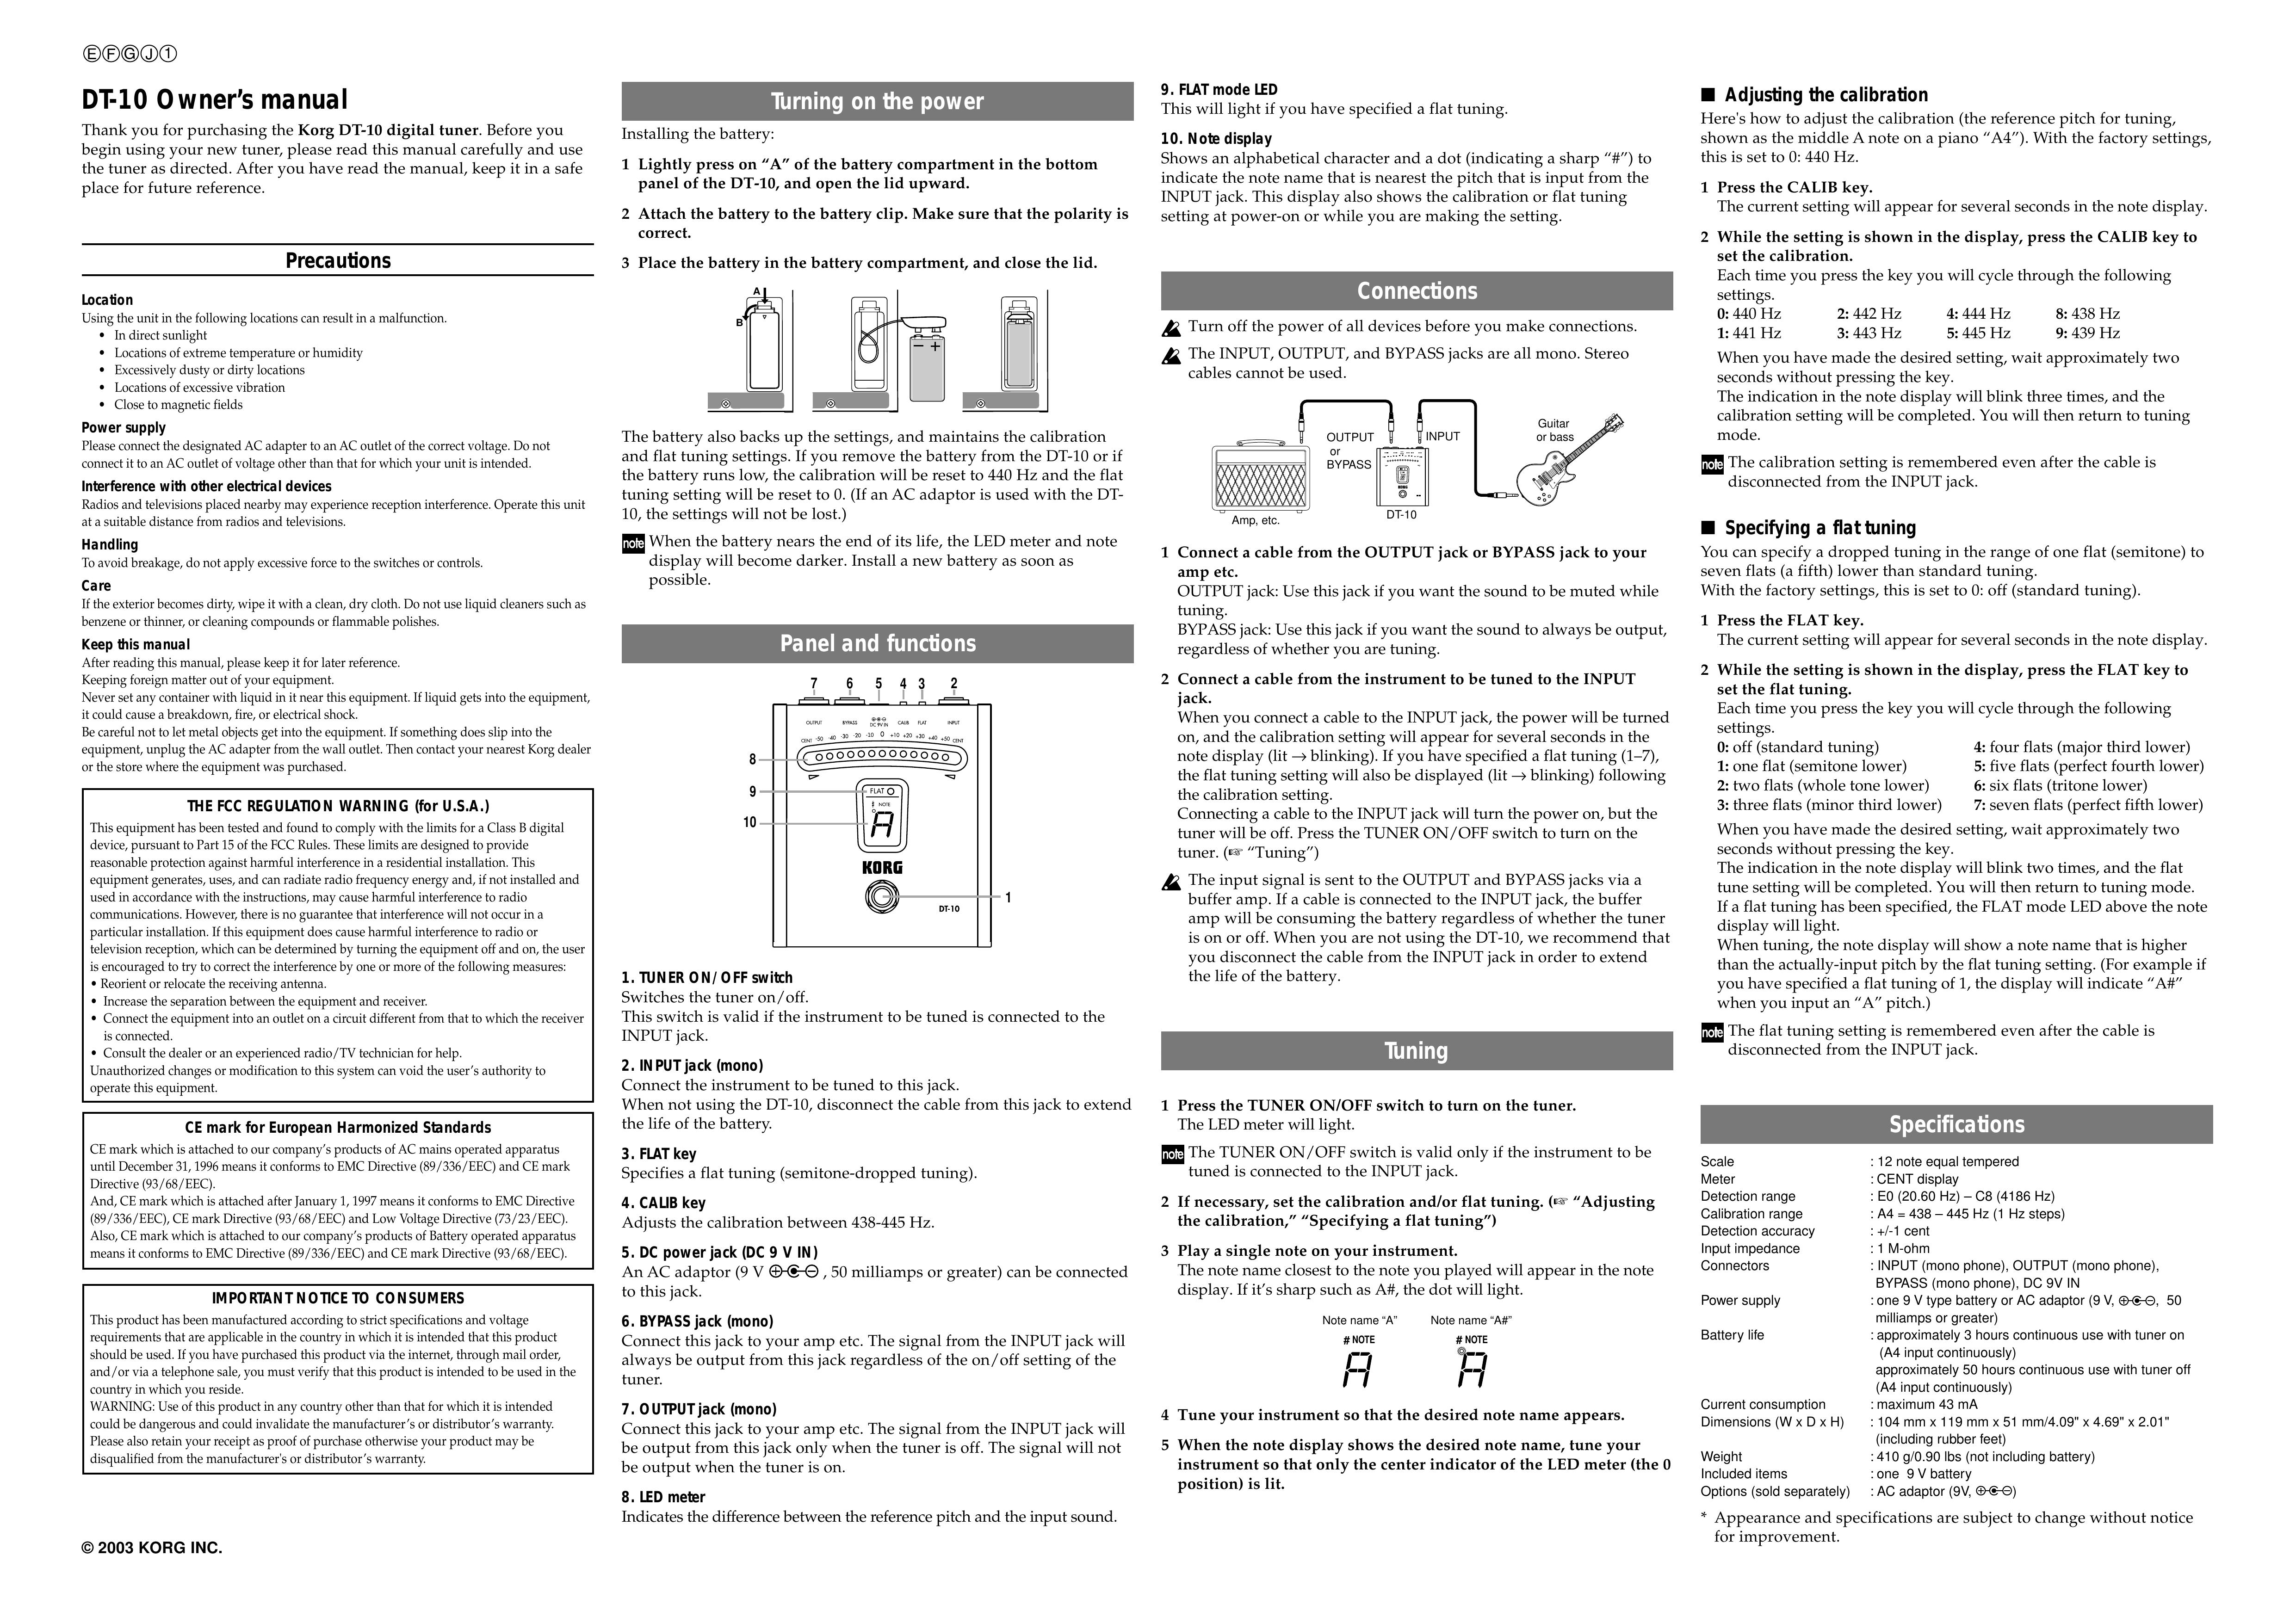 Korg DT-10 Musical Instrument User Manual